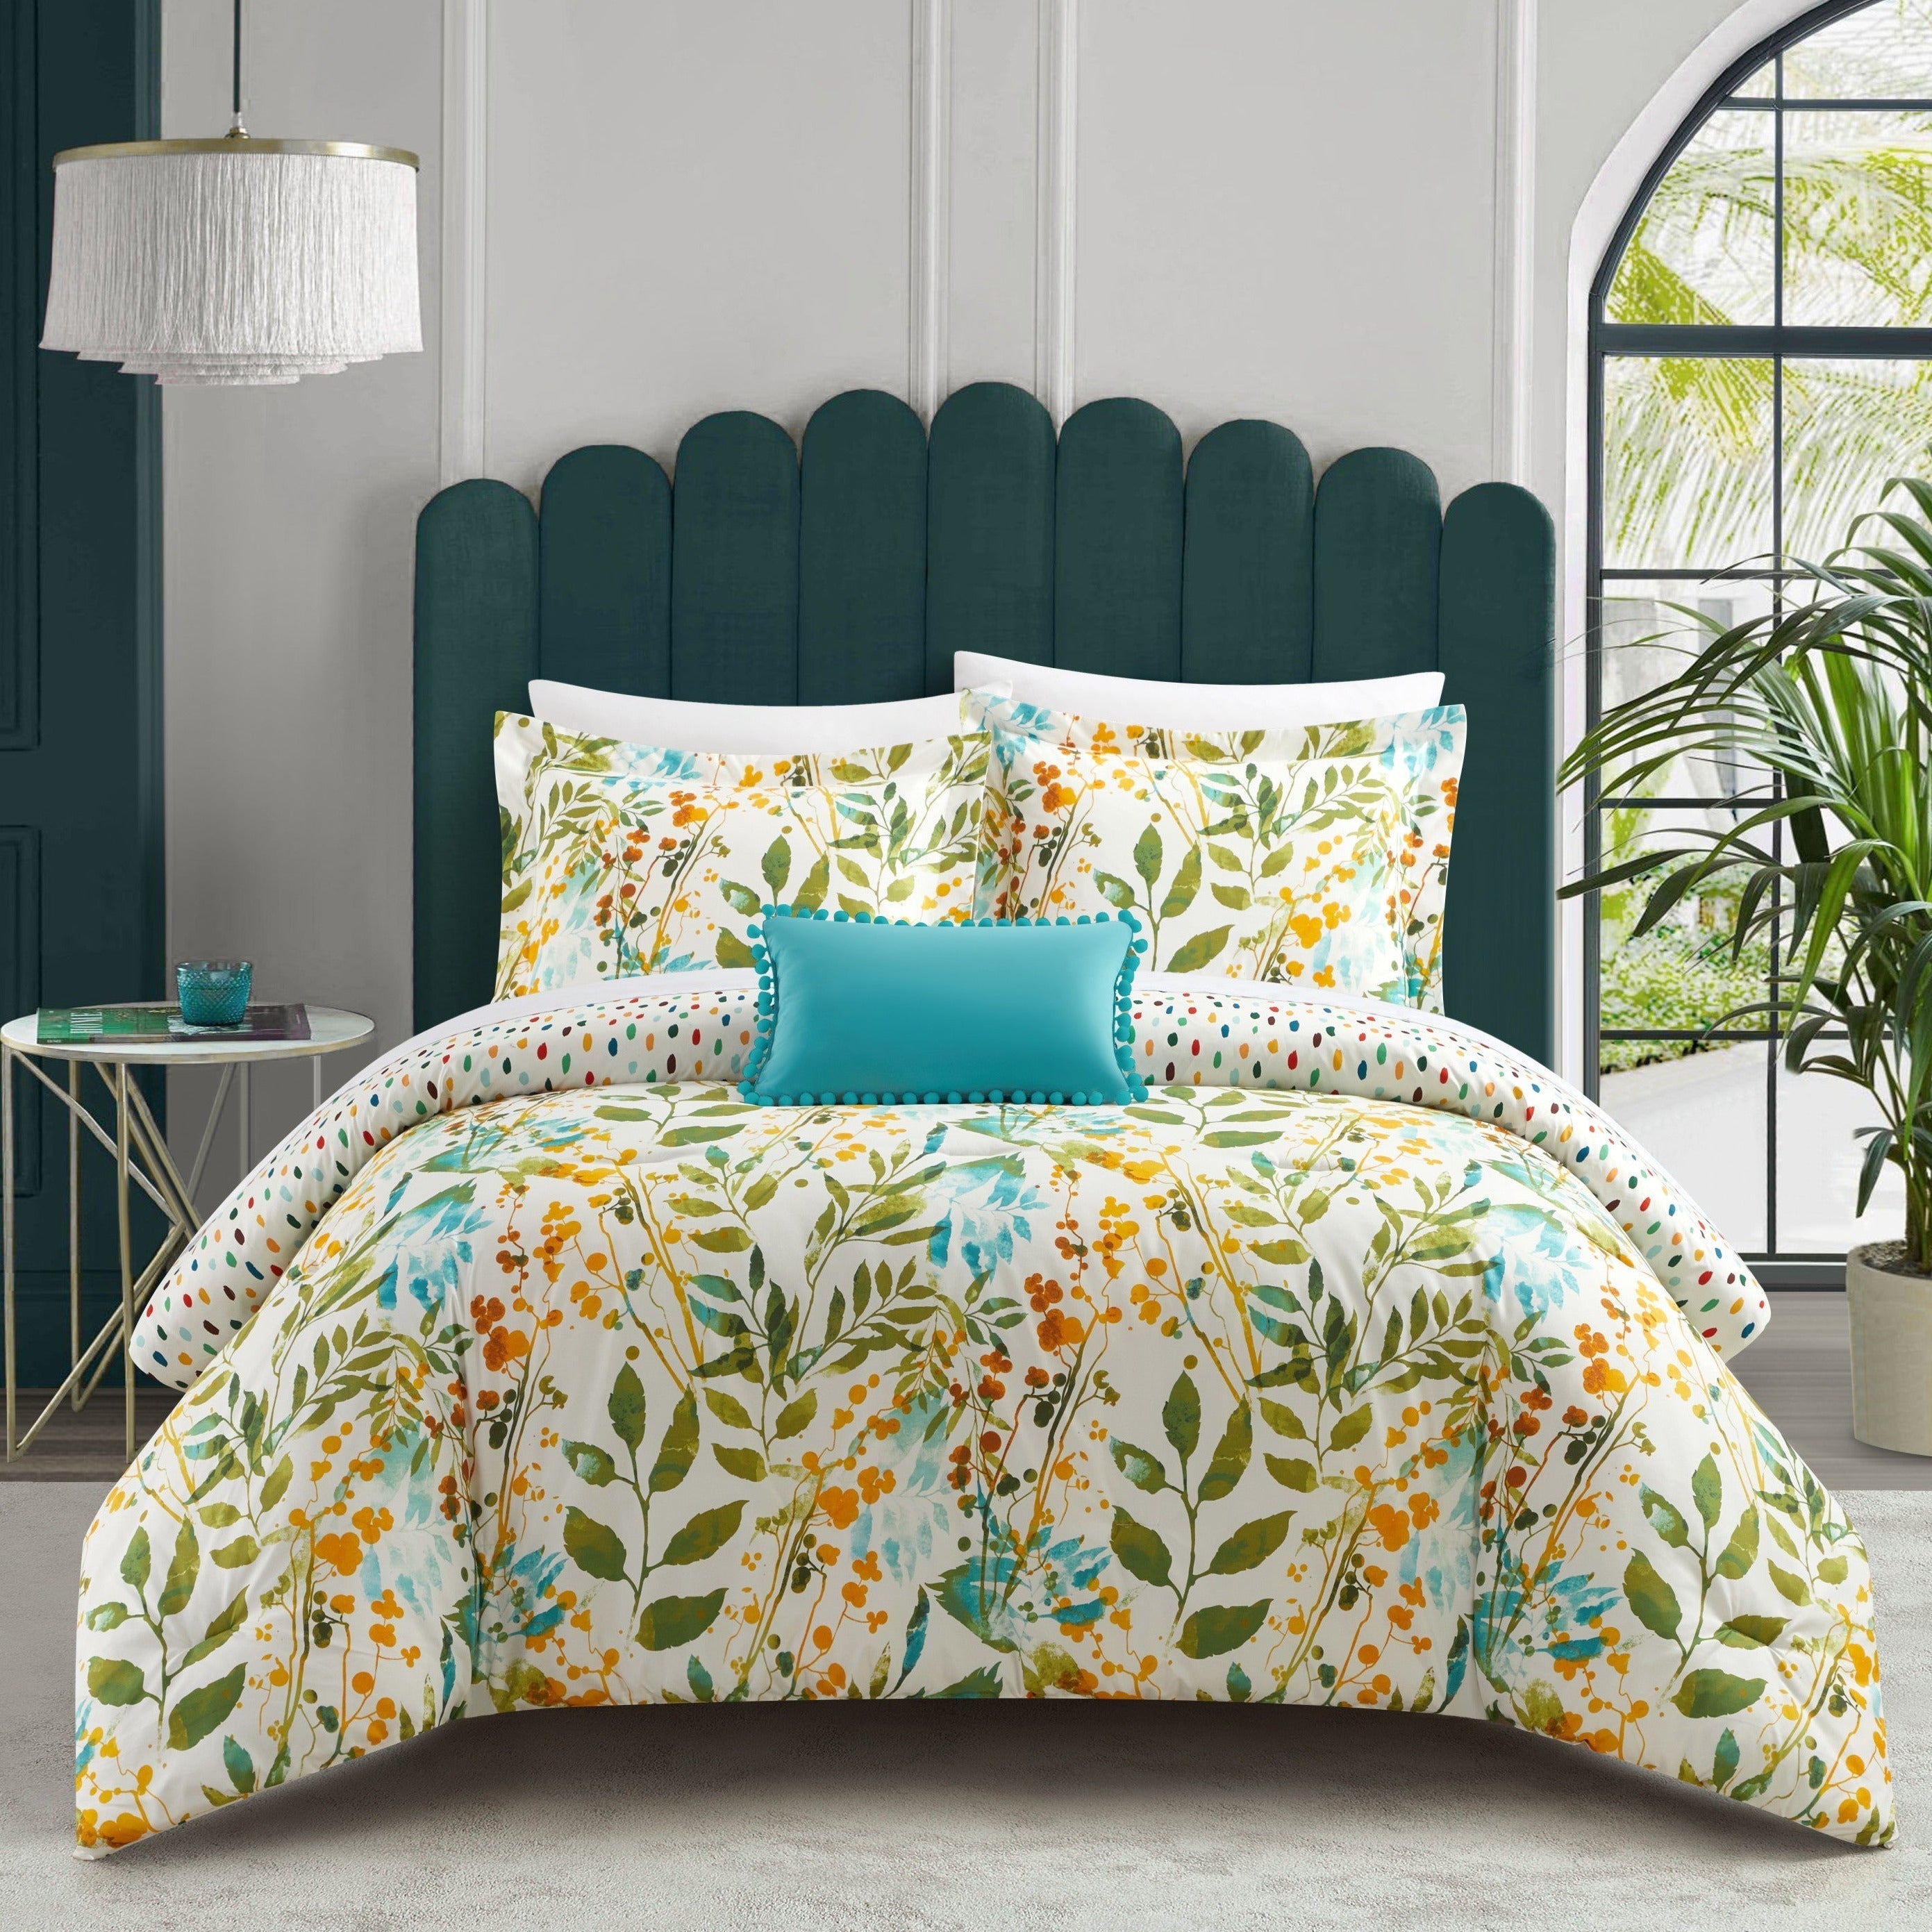 Blaire 8 Piece Reversible Floral Print Comforter Set